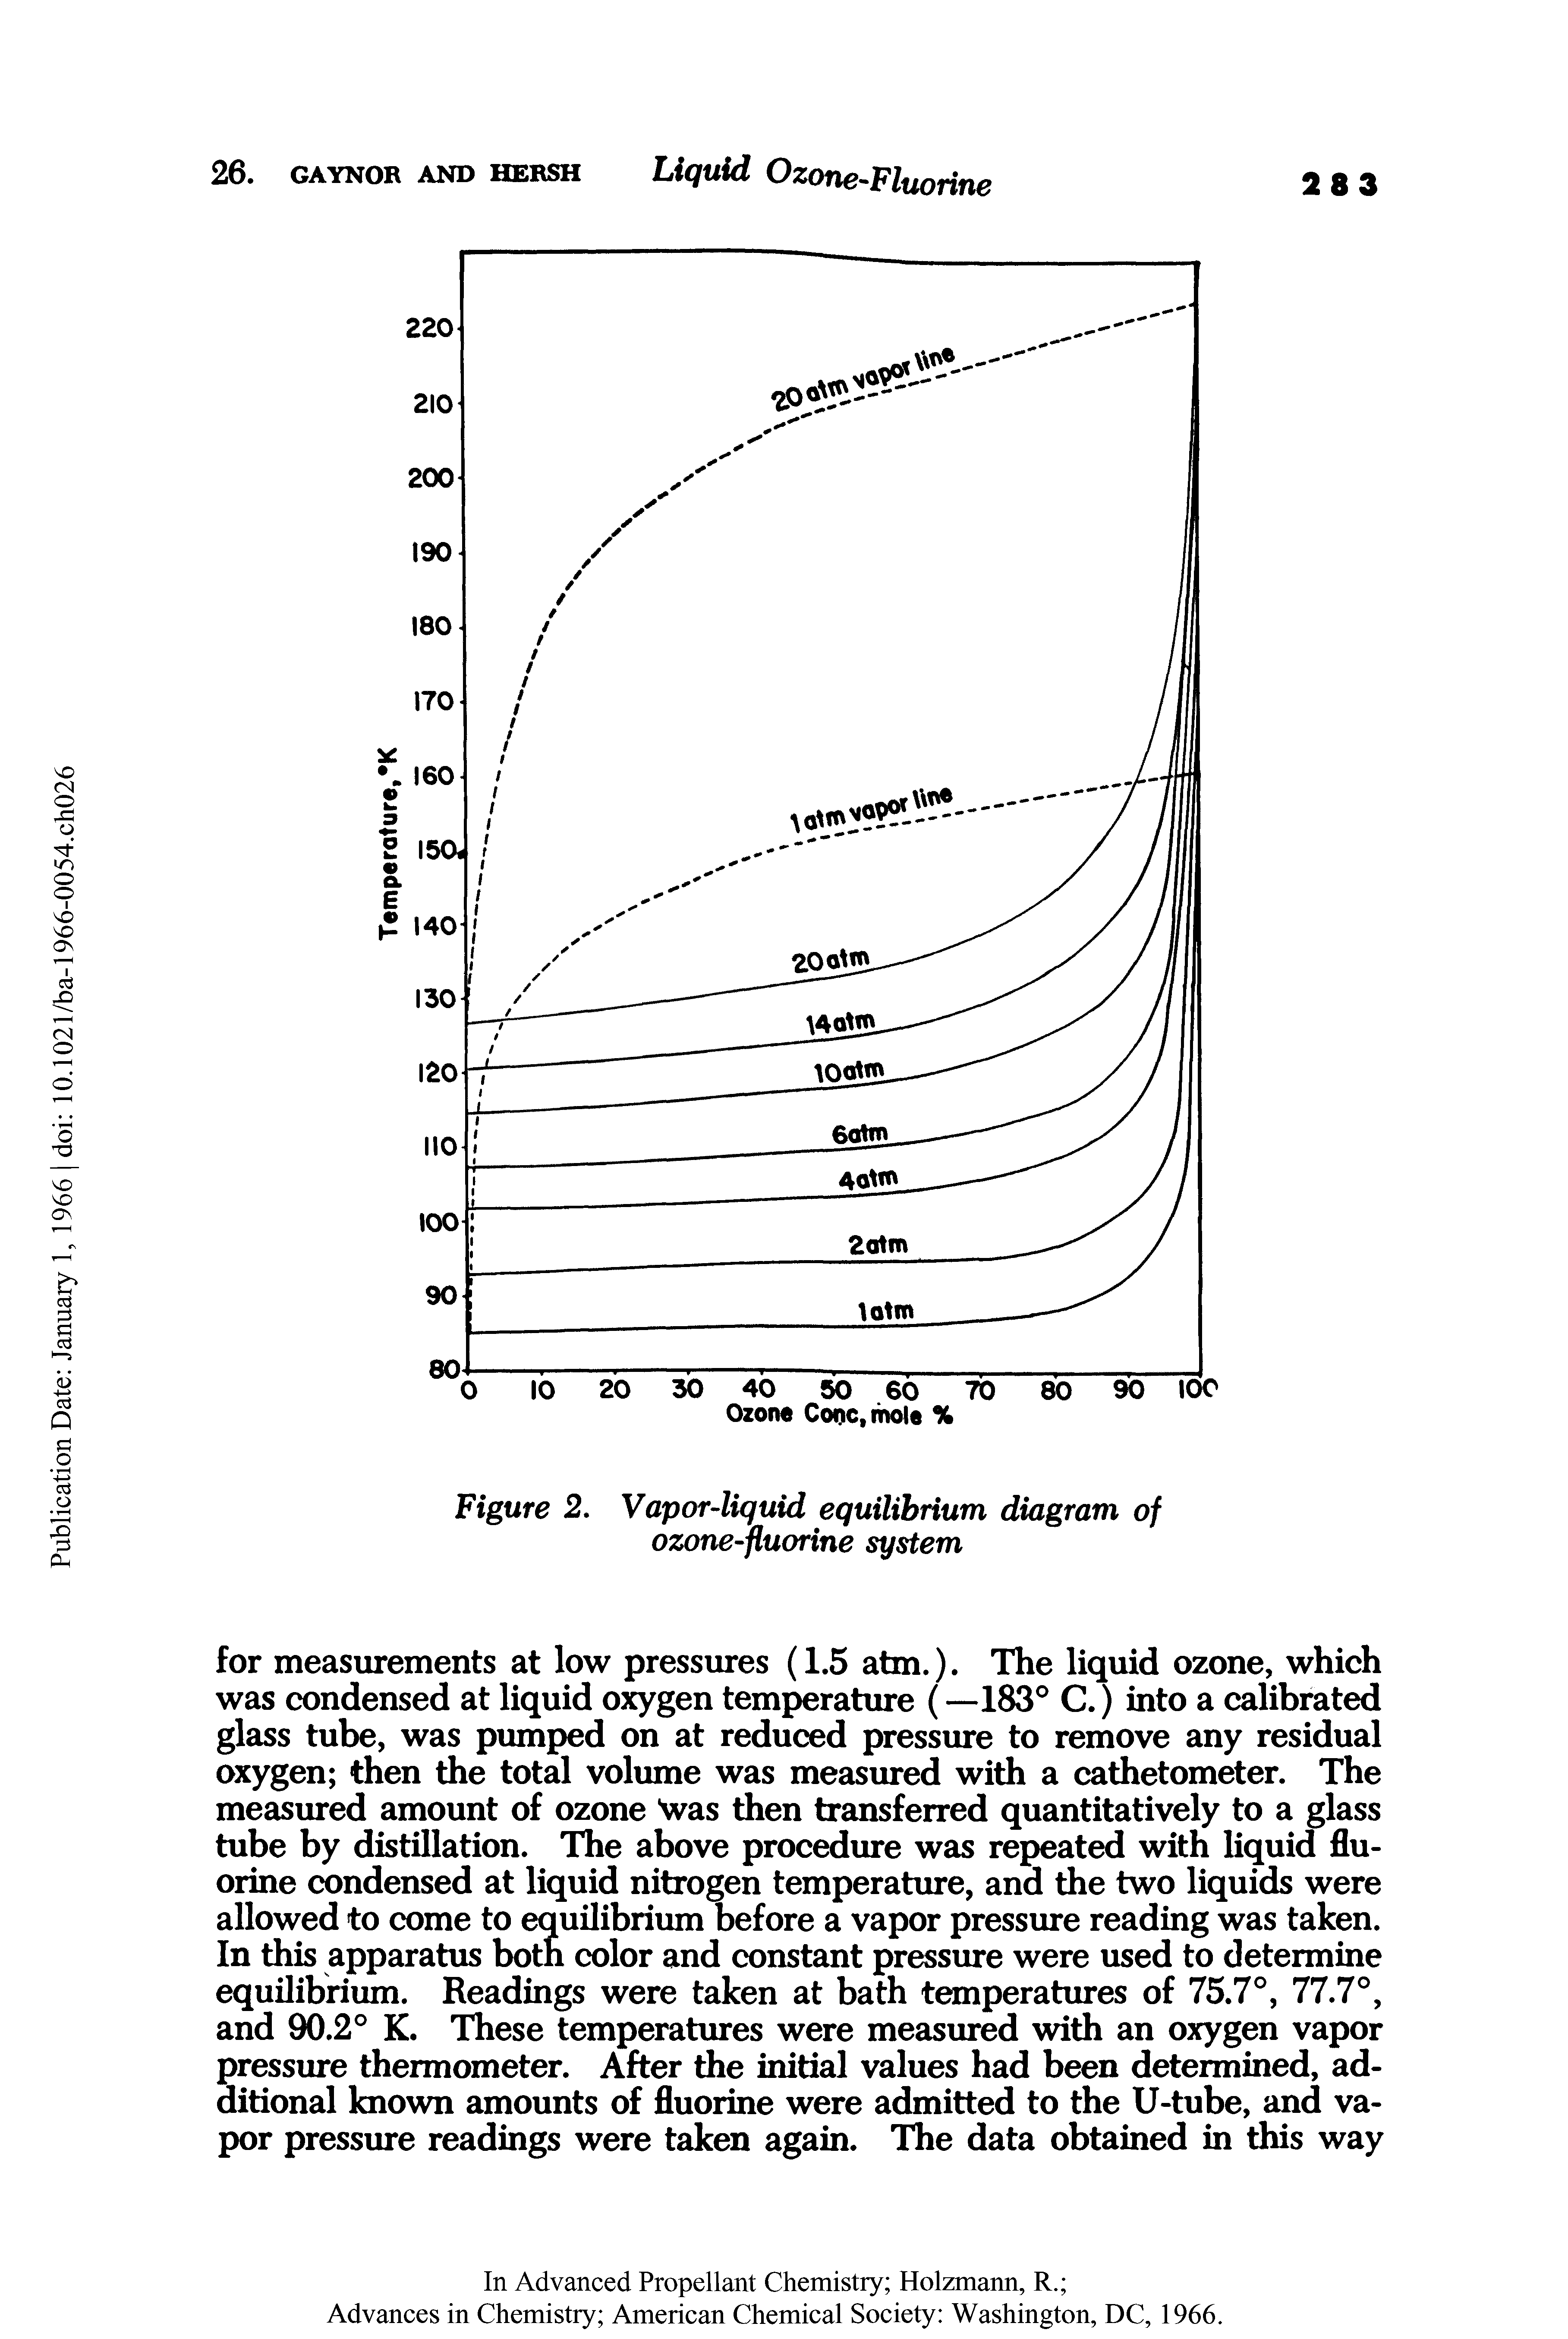 Figure 2. Vapor-liquid equilibrium diagram of ozone-fluorine system...